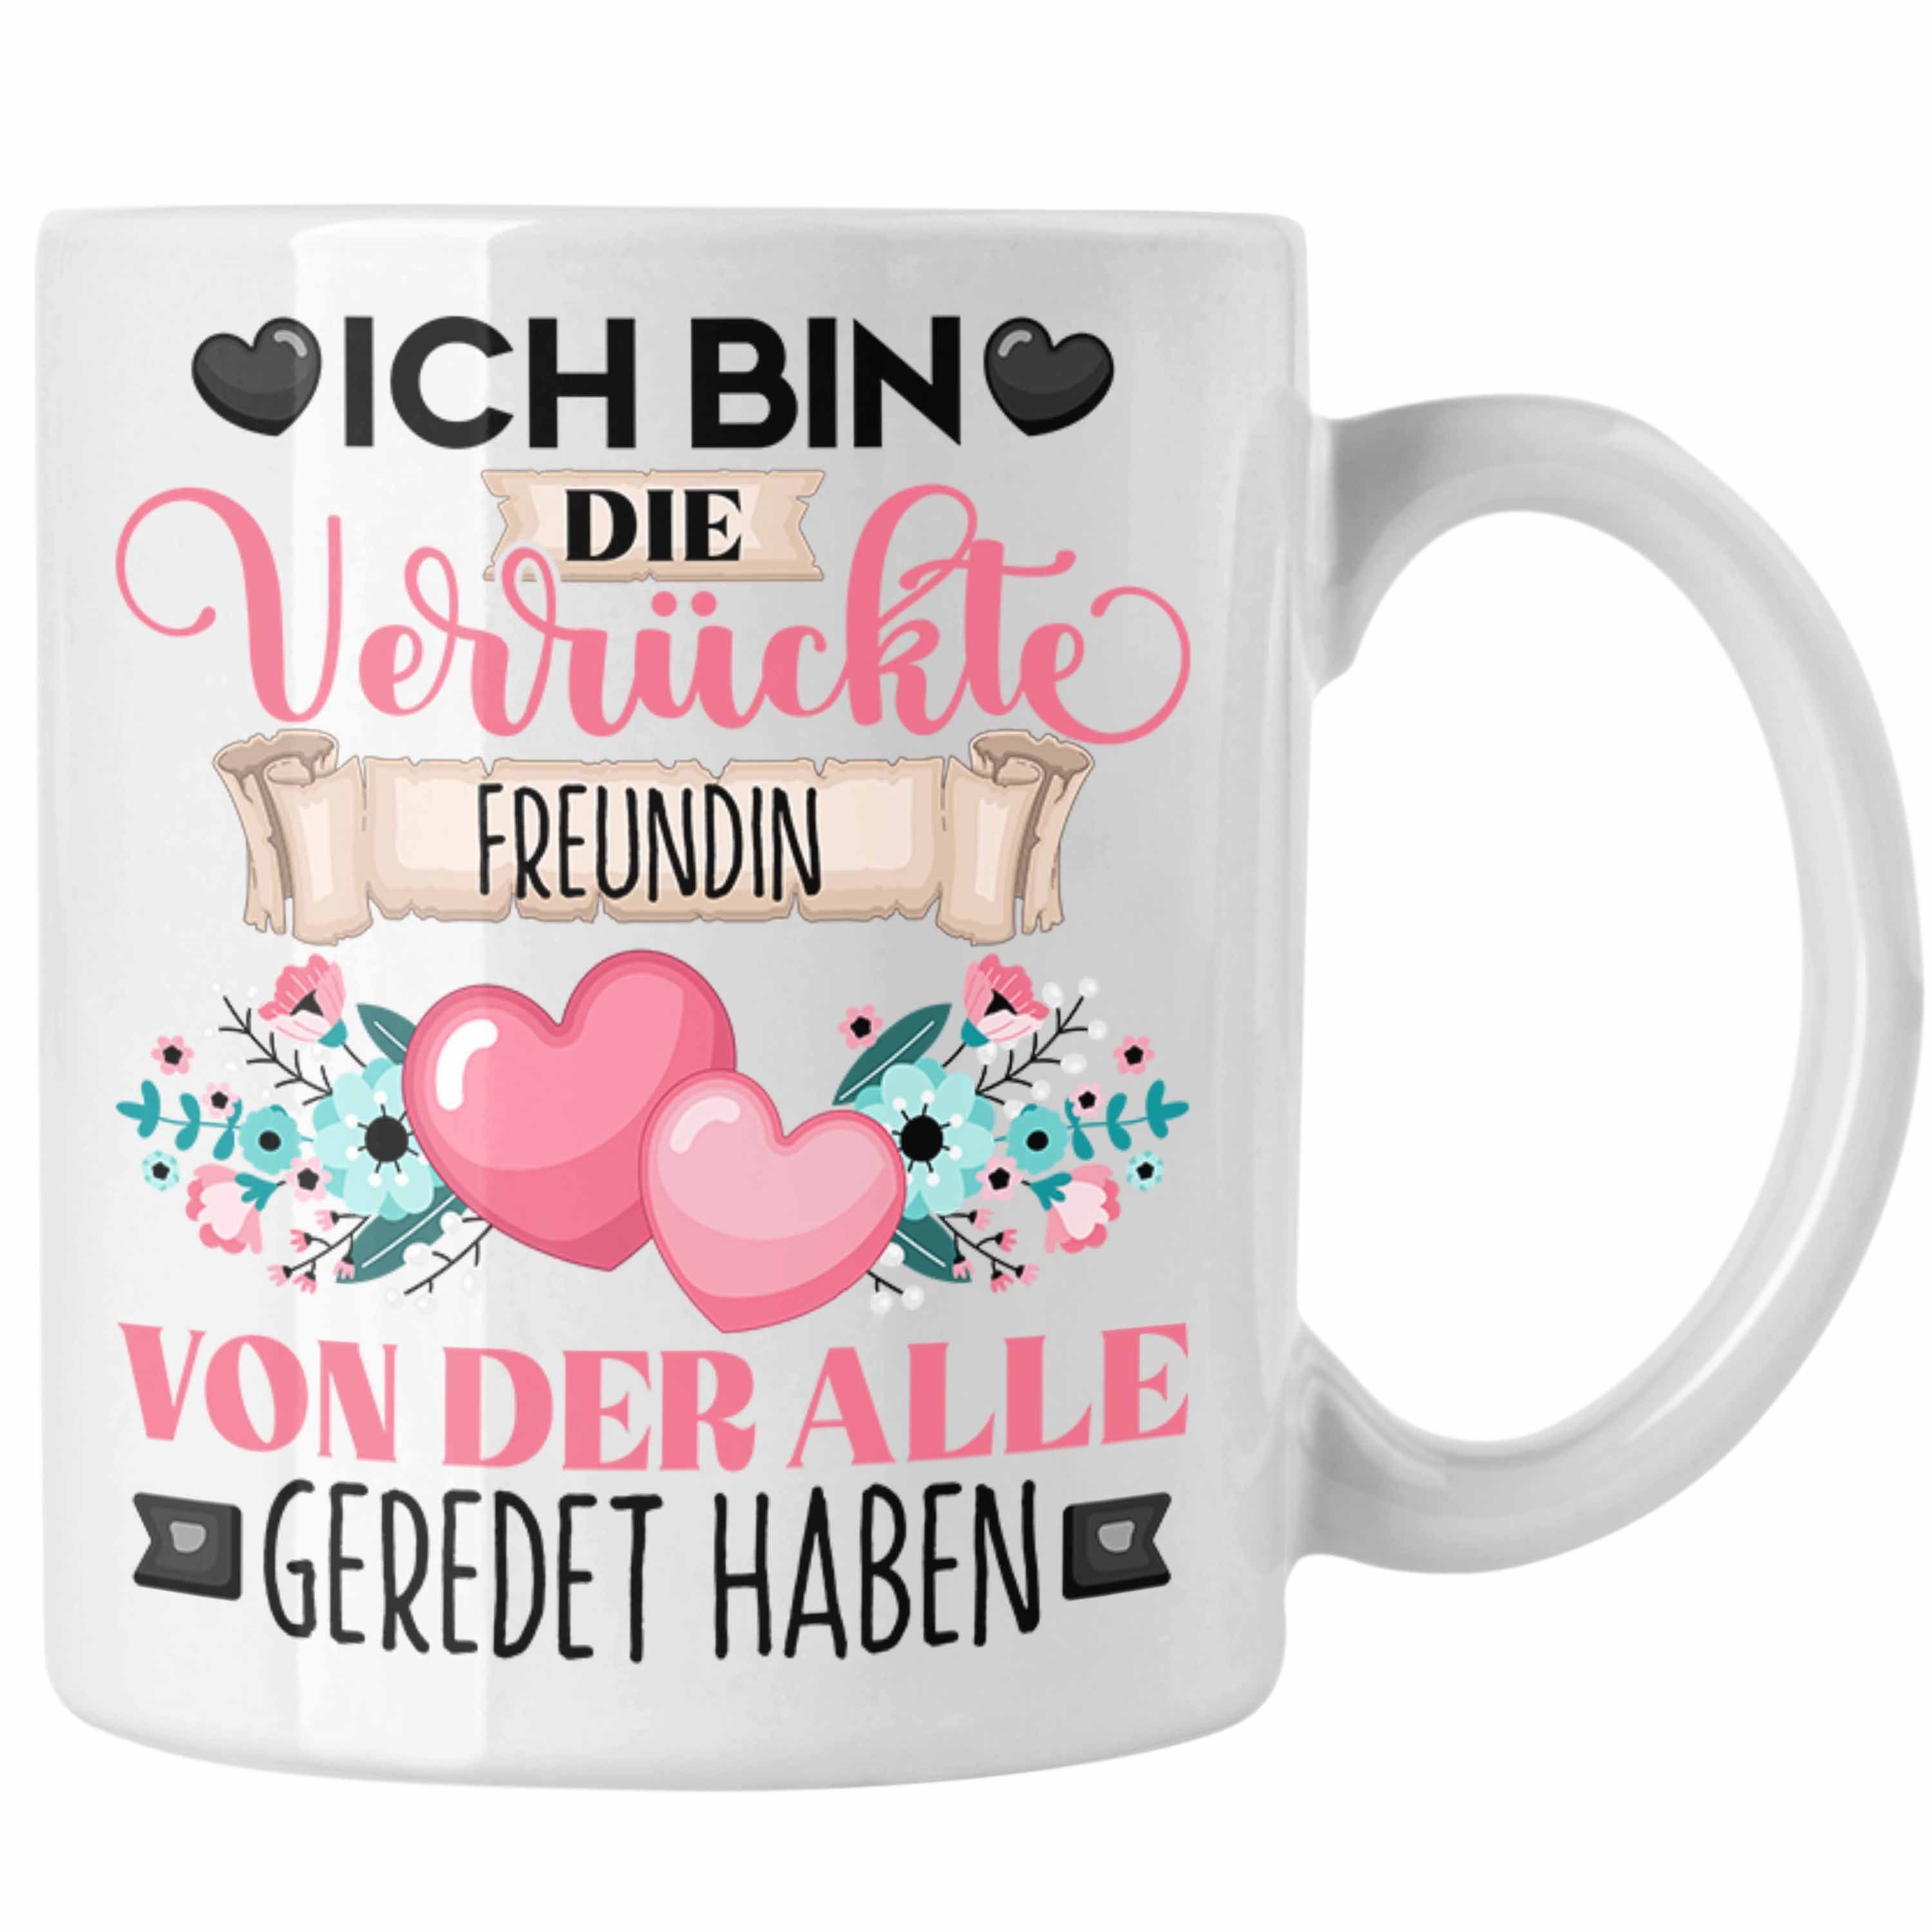 Trendation Tasse Freundin Weiss Ich Bin Verrü Geschenkidee Geschenk Lustiger Spruch Die Tasse